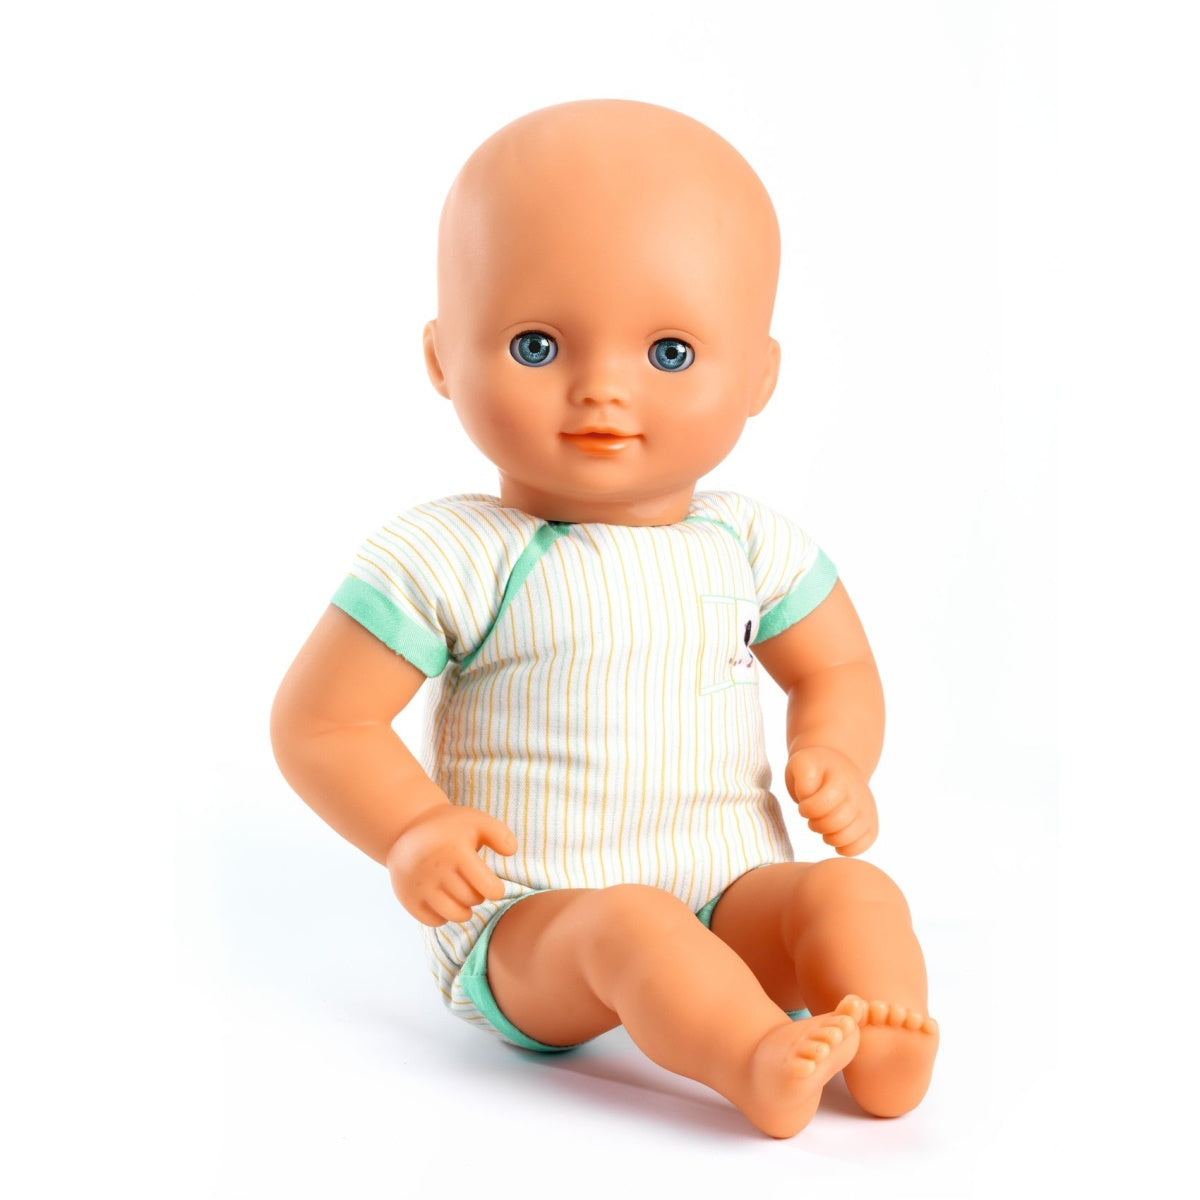 DJECO Puppe Lilas Rose hat blaue Schlaf-Augen die sich schließen wenn man Sie hinlegt. Eine Puppe für Kinder ab 18 Monaten. Sie ist leicht und ihre Größe (32 cm) ist perfekt für kleine Arme geeignet. Ihr weicher Körper ist mit einem hübschen „Body" bedruckt. Weich und anschmiegsam lässt sich die Puppe wie ein echtes Baby im Arm halten. 